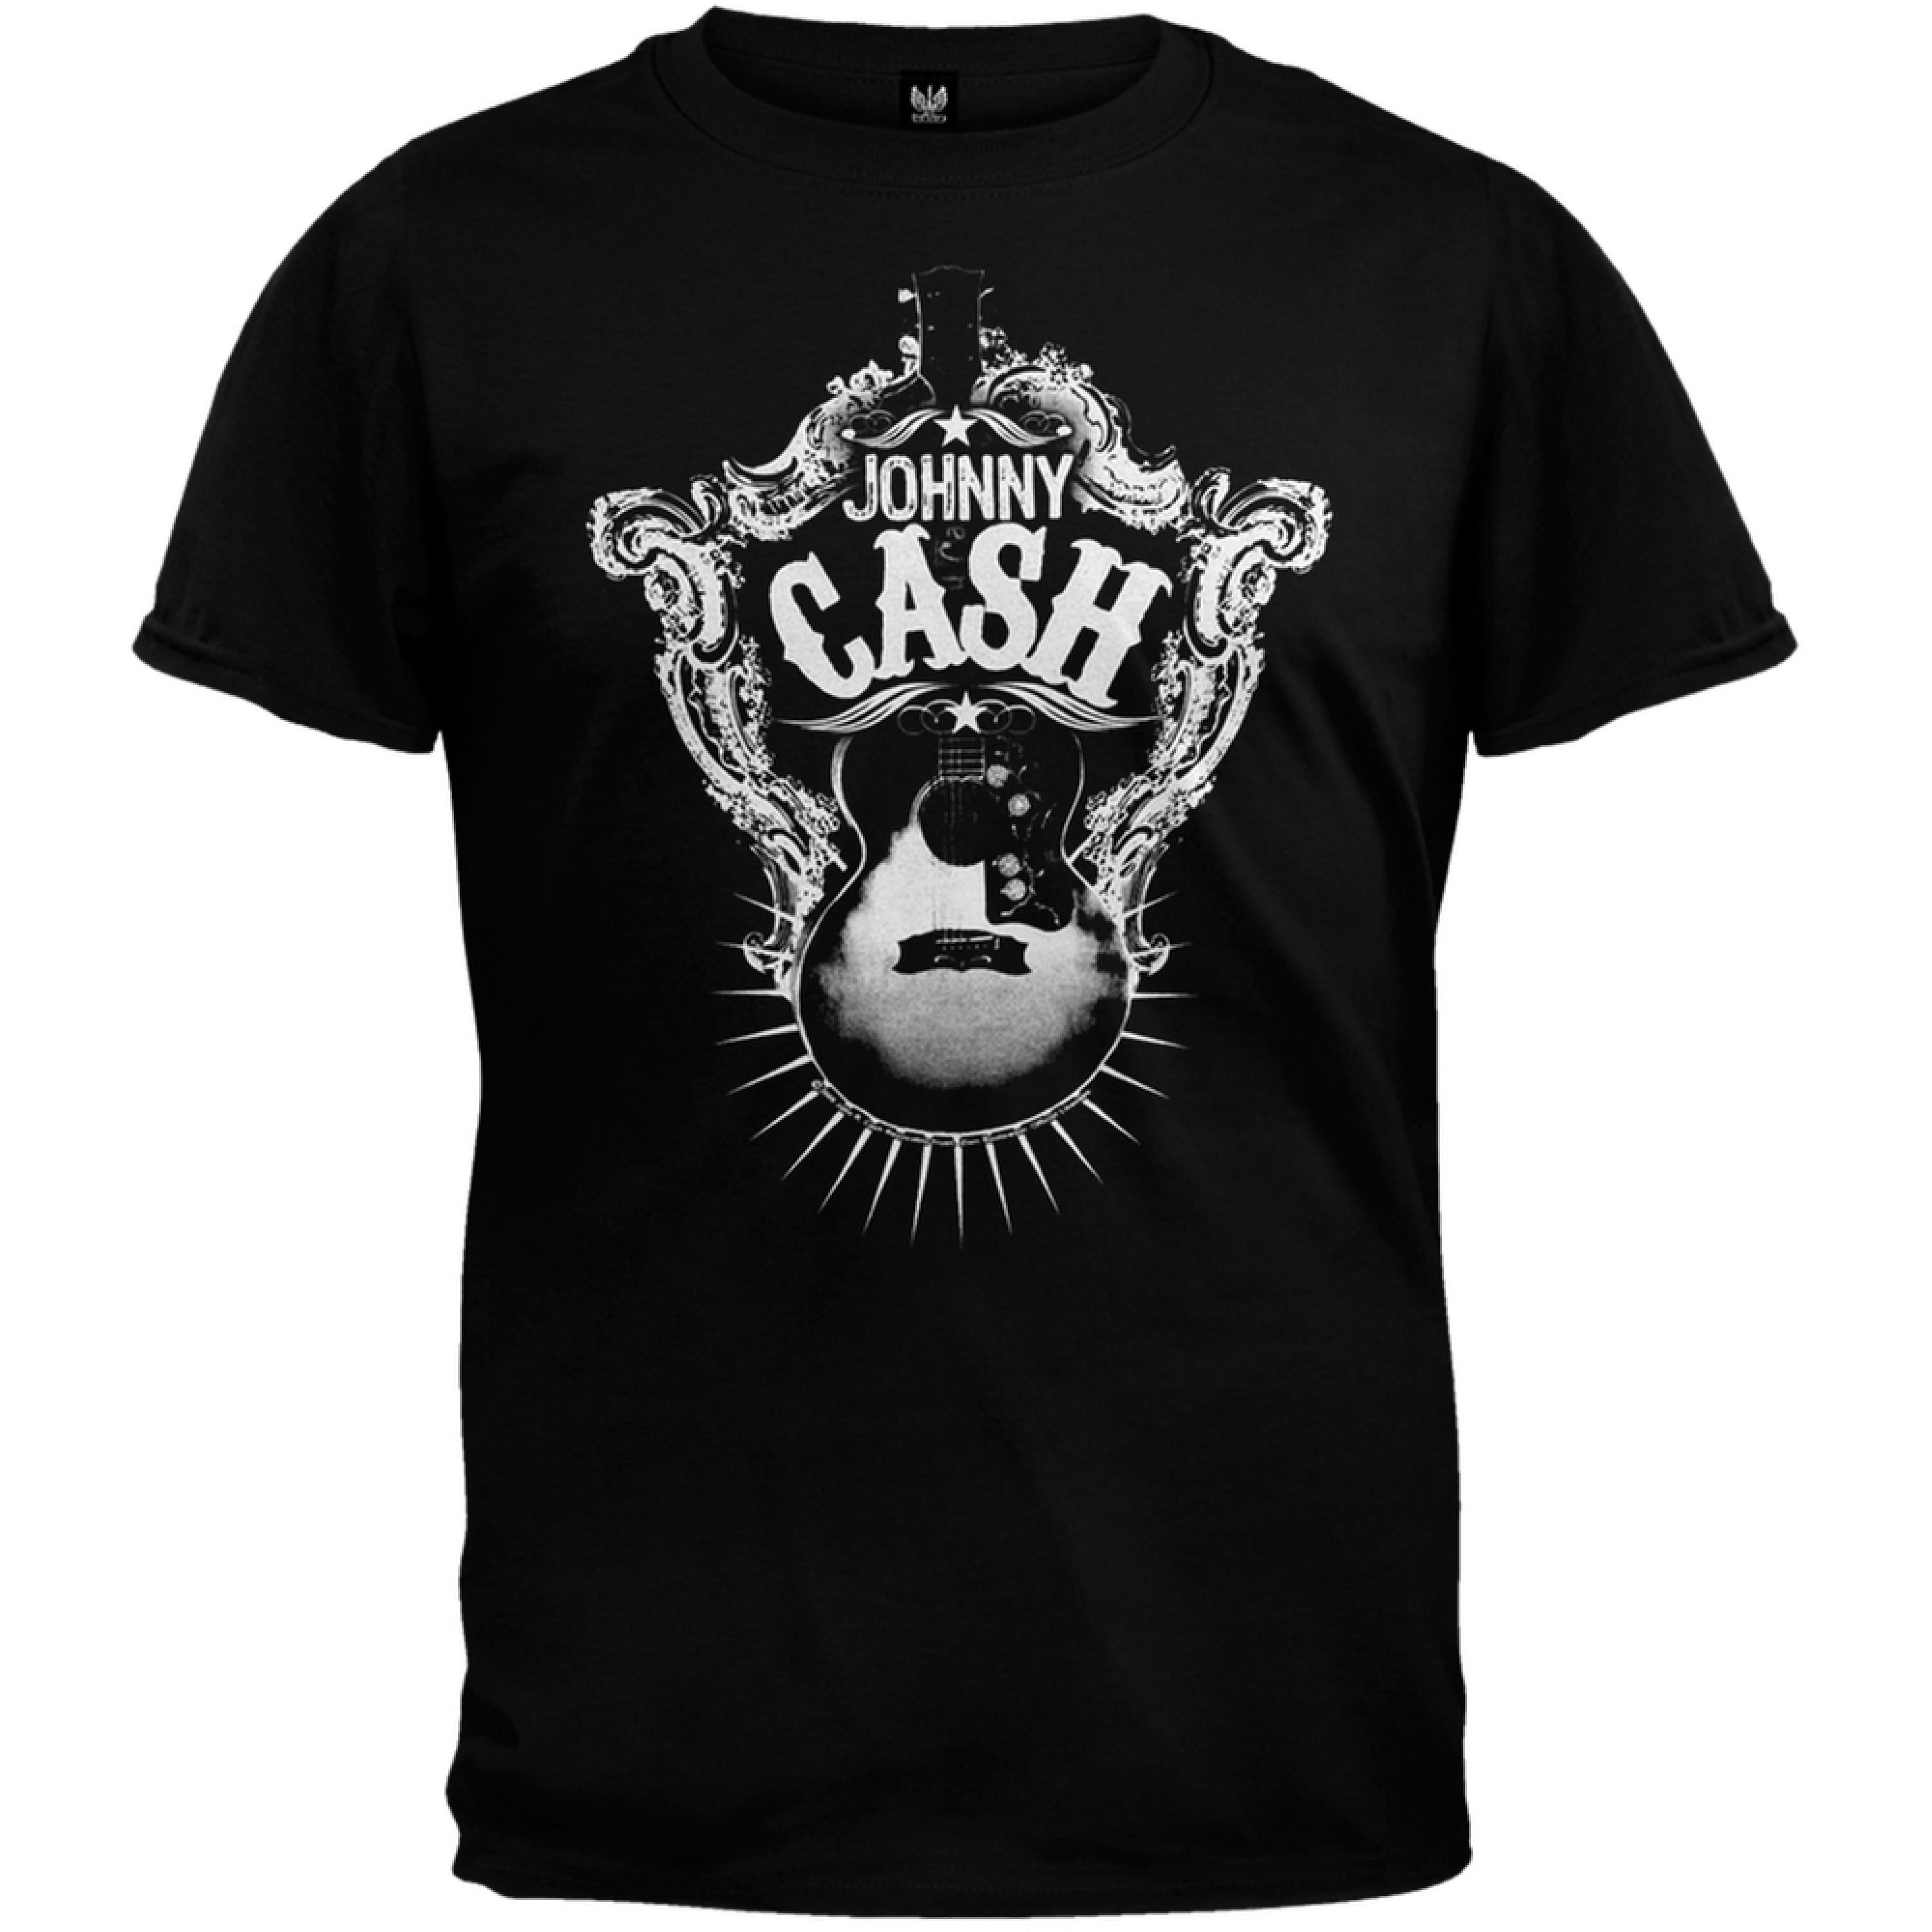 Johnny Cash - Guitar Target Soft T-Shirt - Walmart.com - Walmart.com